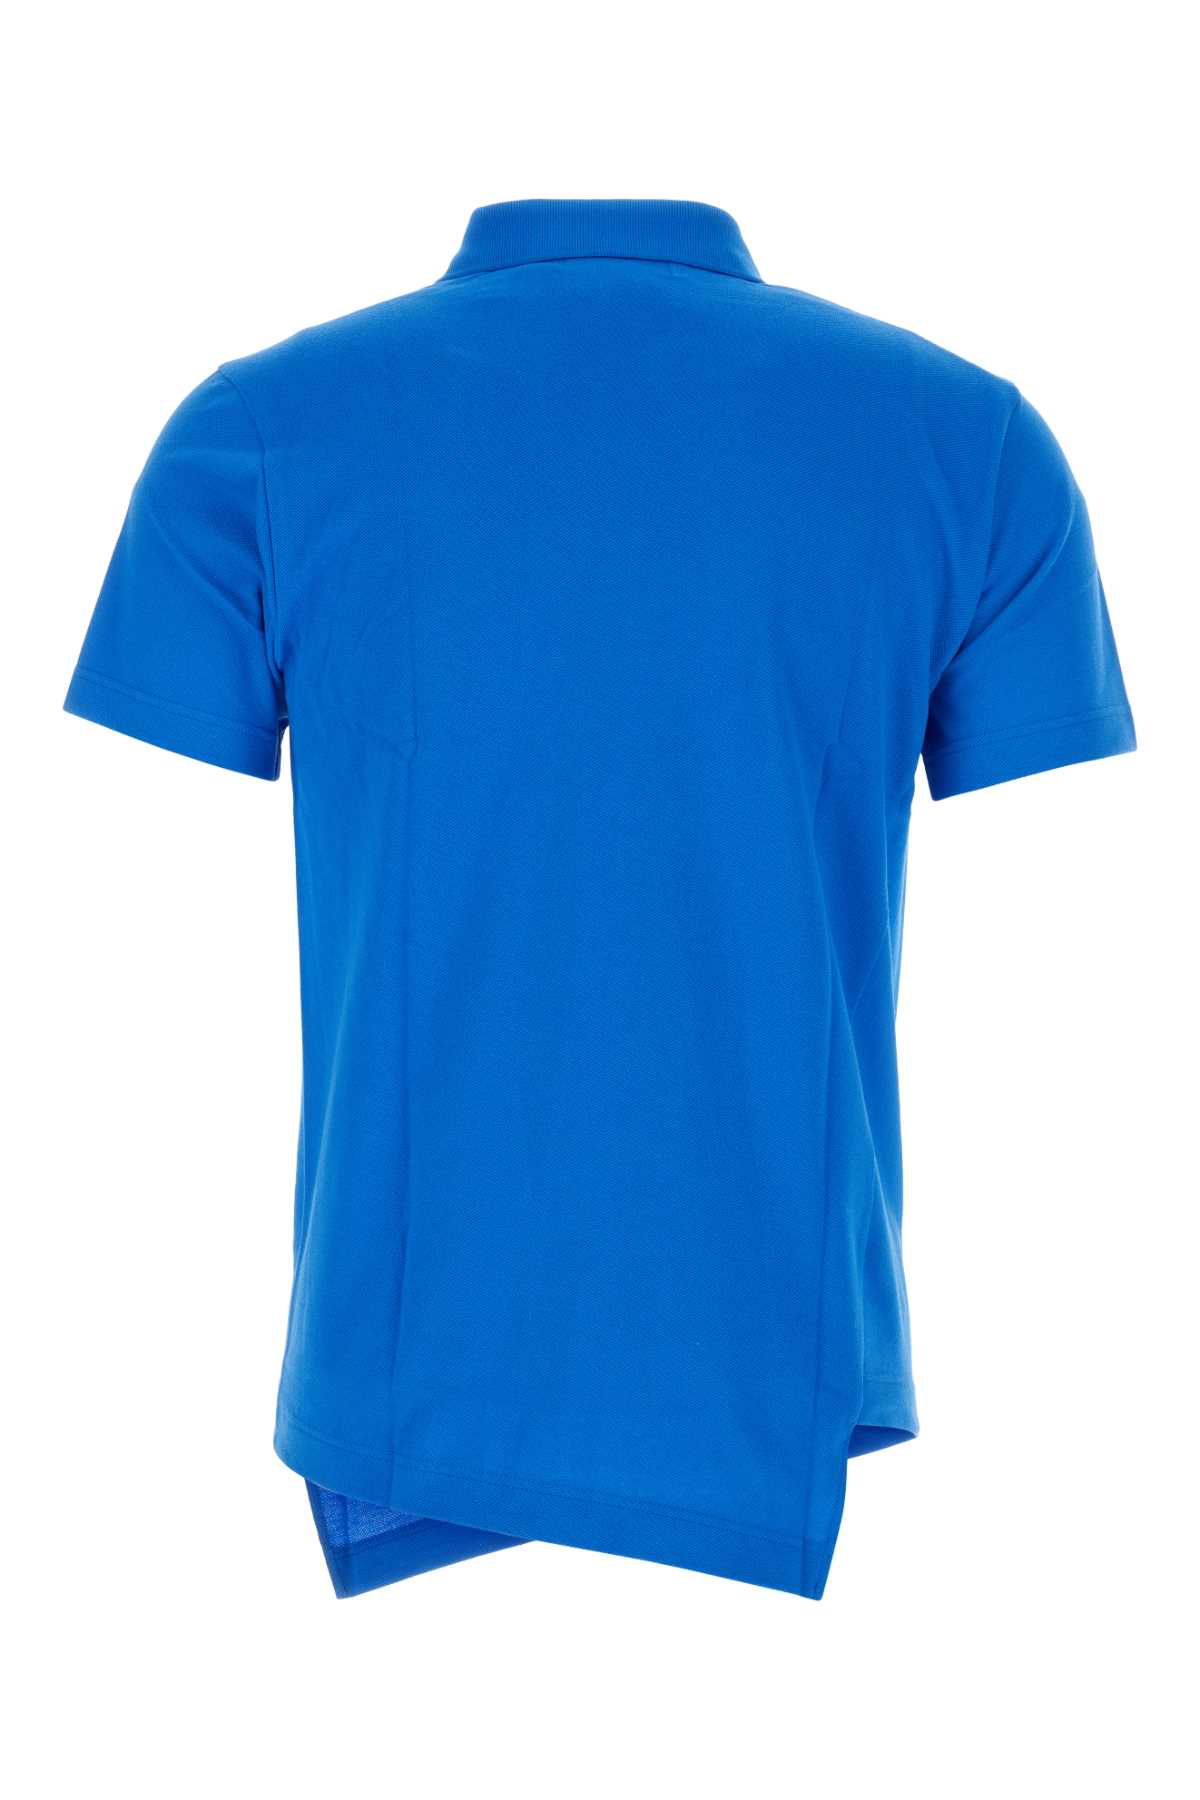 Comme Des Garçons Shirt Cerulean Blue Piquet Comme Des Garã§ons Shirt X Lacoste Polo Shirt